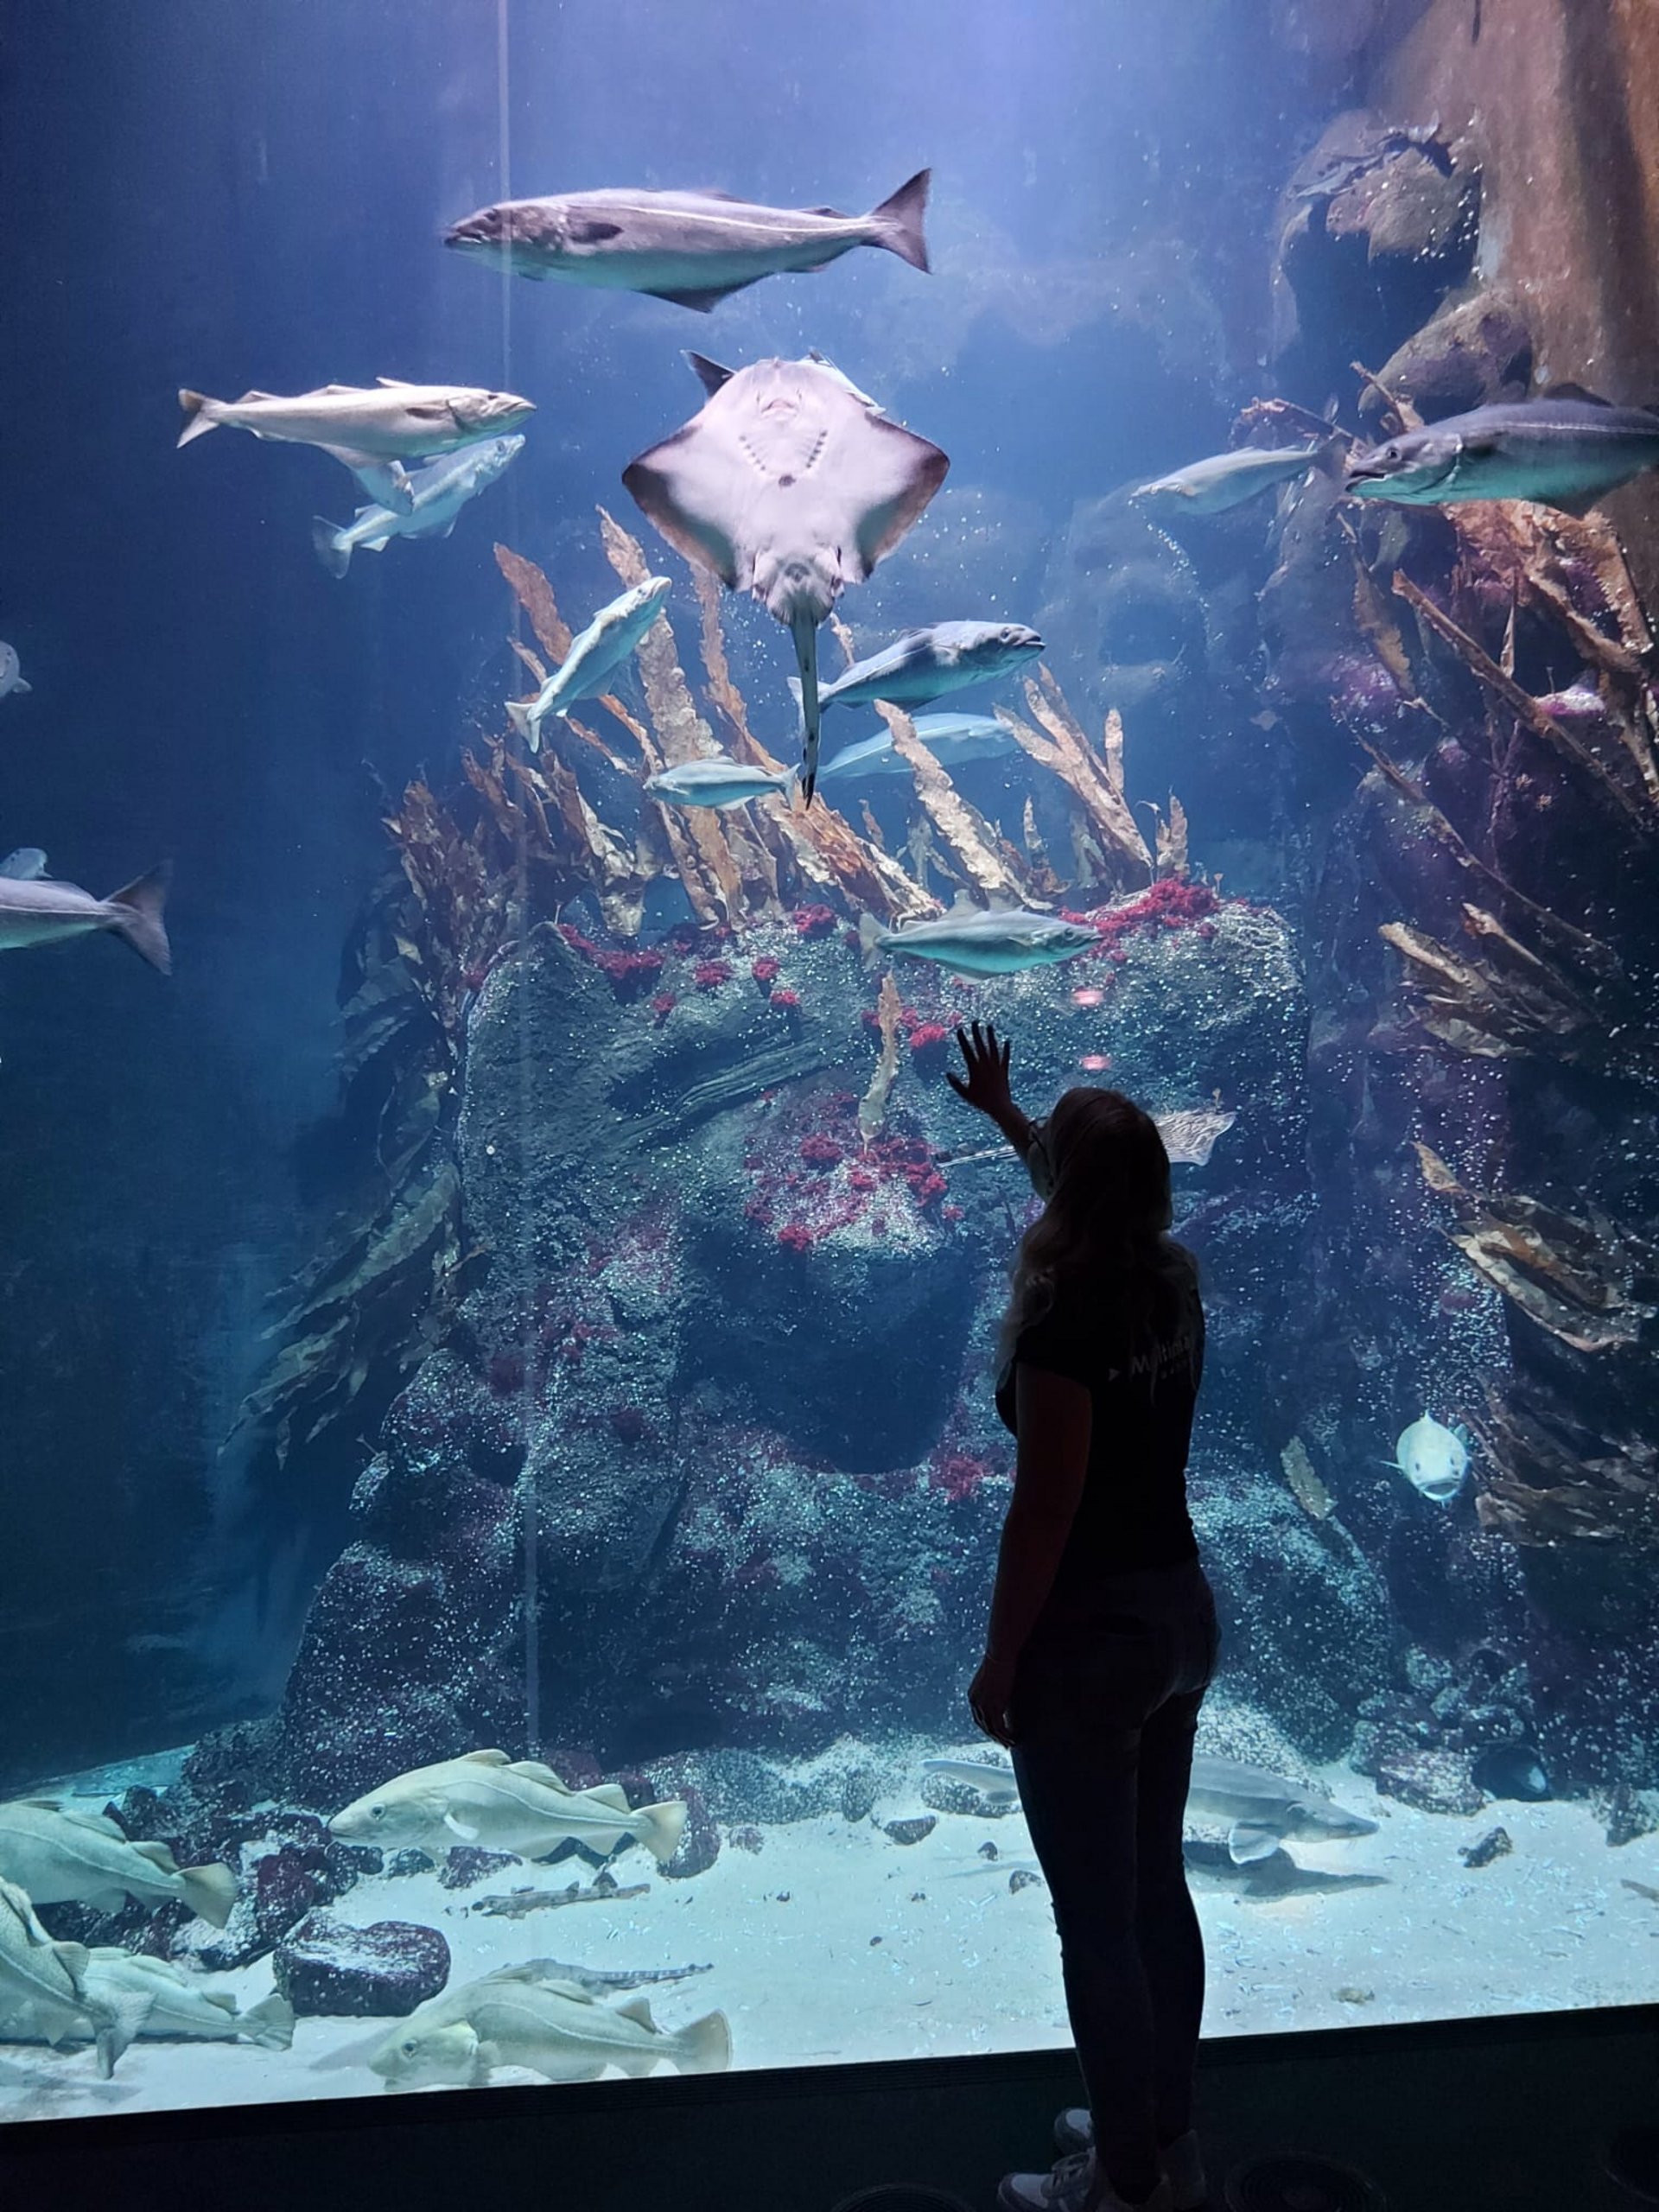 Johanna steht vor einem Großaquarium mit Rochen und weiteren Fischen im Wasser zu sehen.